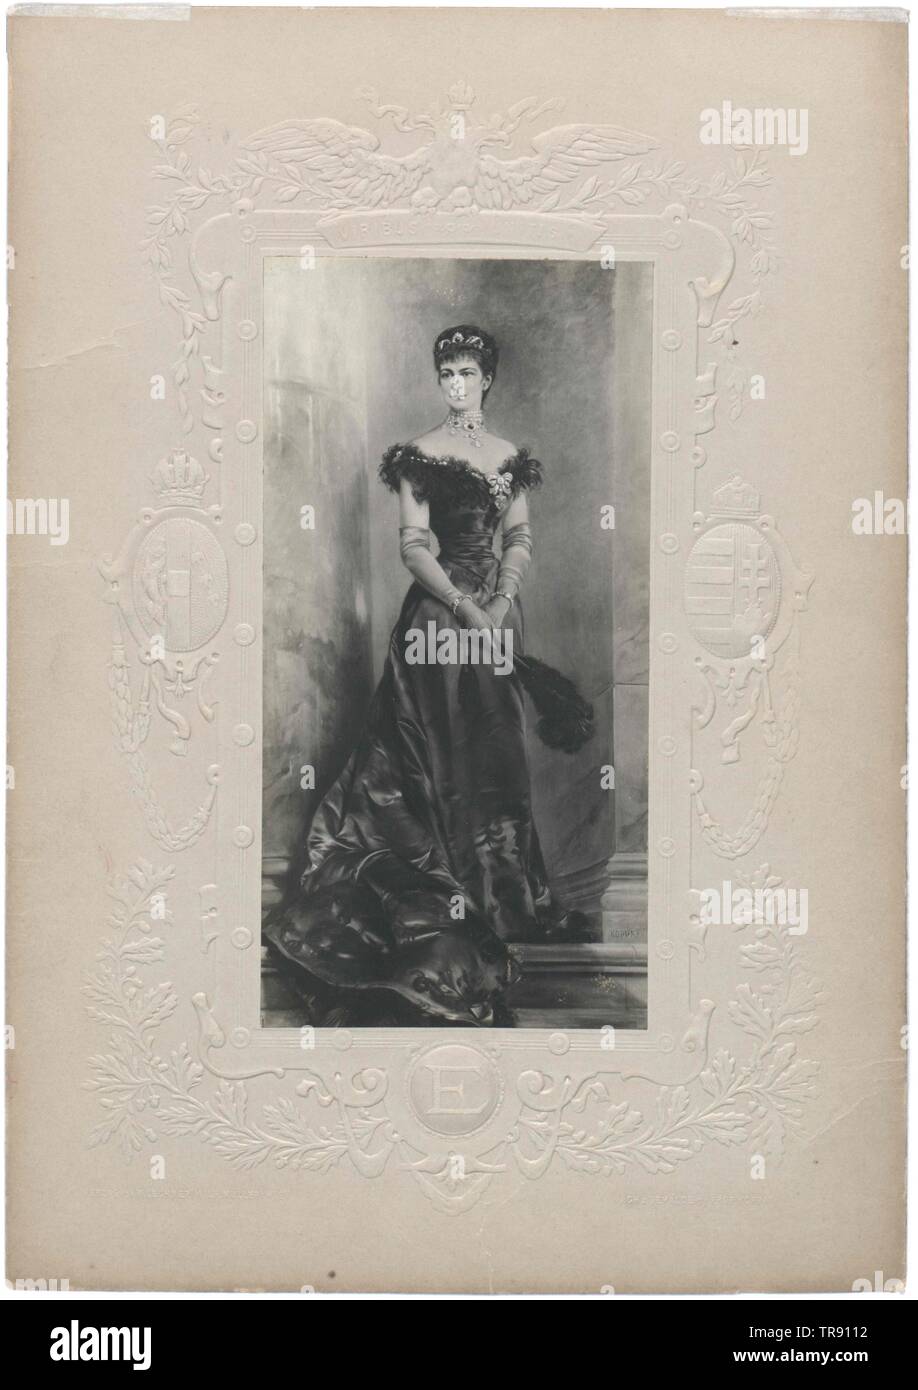 Elisabeth, Kaiserin von Österreich, Fotografie auf Malerei in Token-basiertes über die Ermordung von Elisabeth, Additional-Rights - Clearance-Info - Not-Available Stockfoto